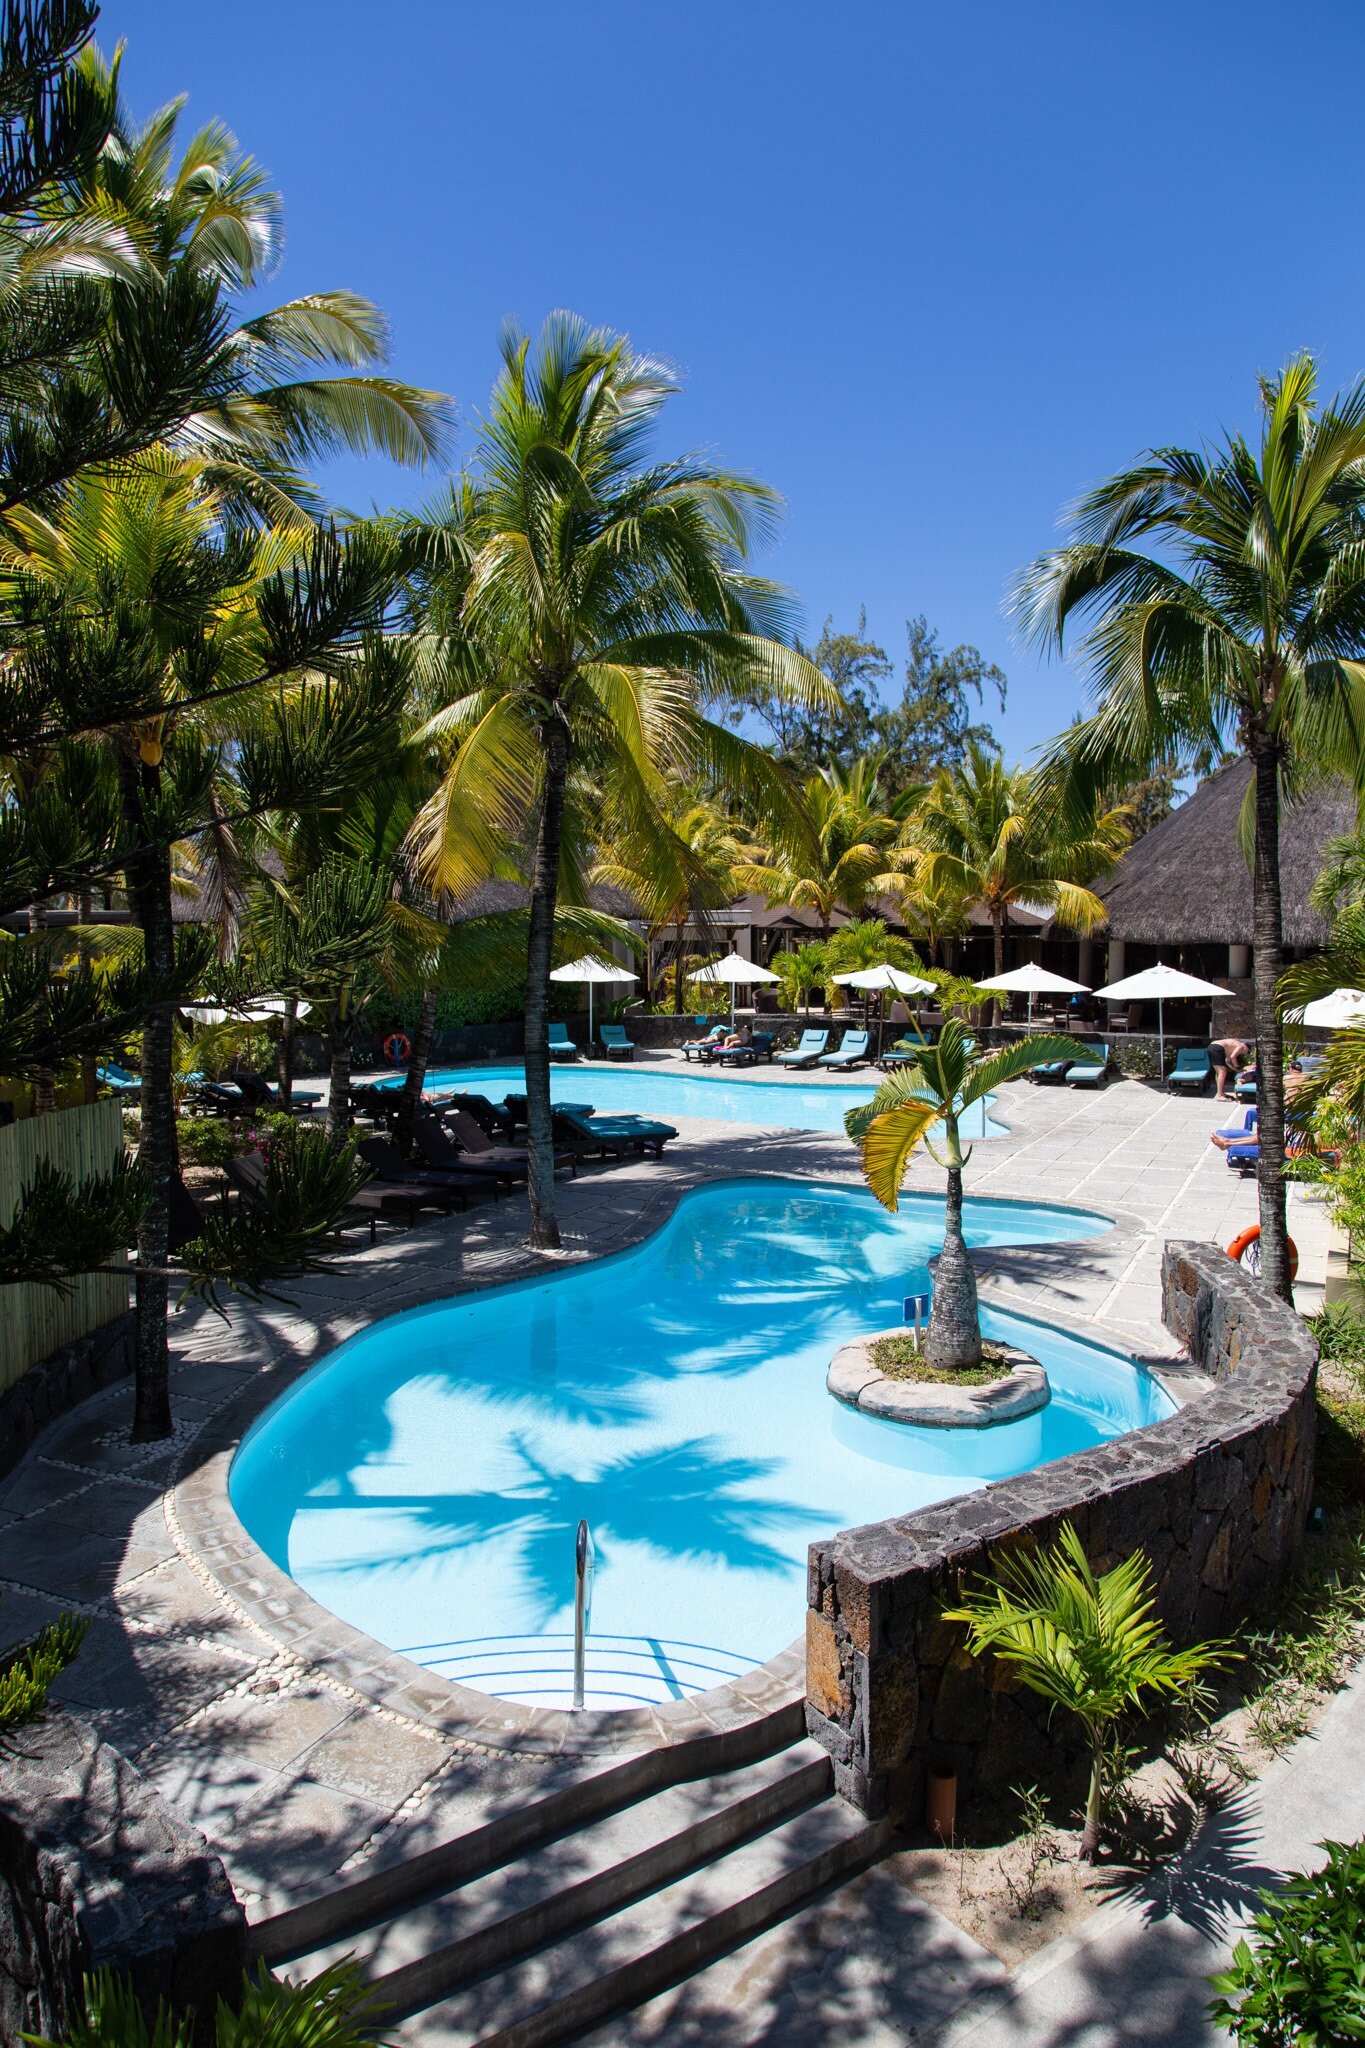 mauritius-hotel-sunrise-attitude-piscina-belle-mare-wadidestination.jpg